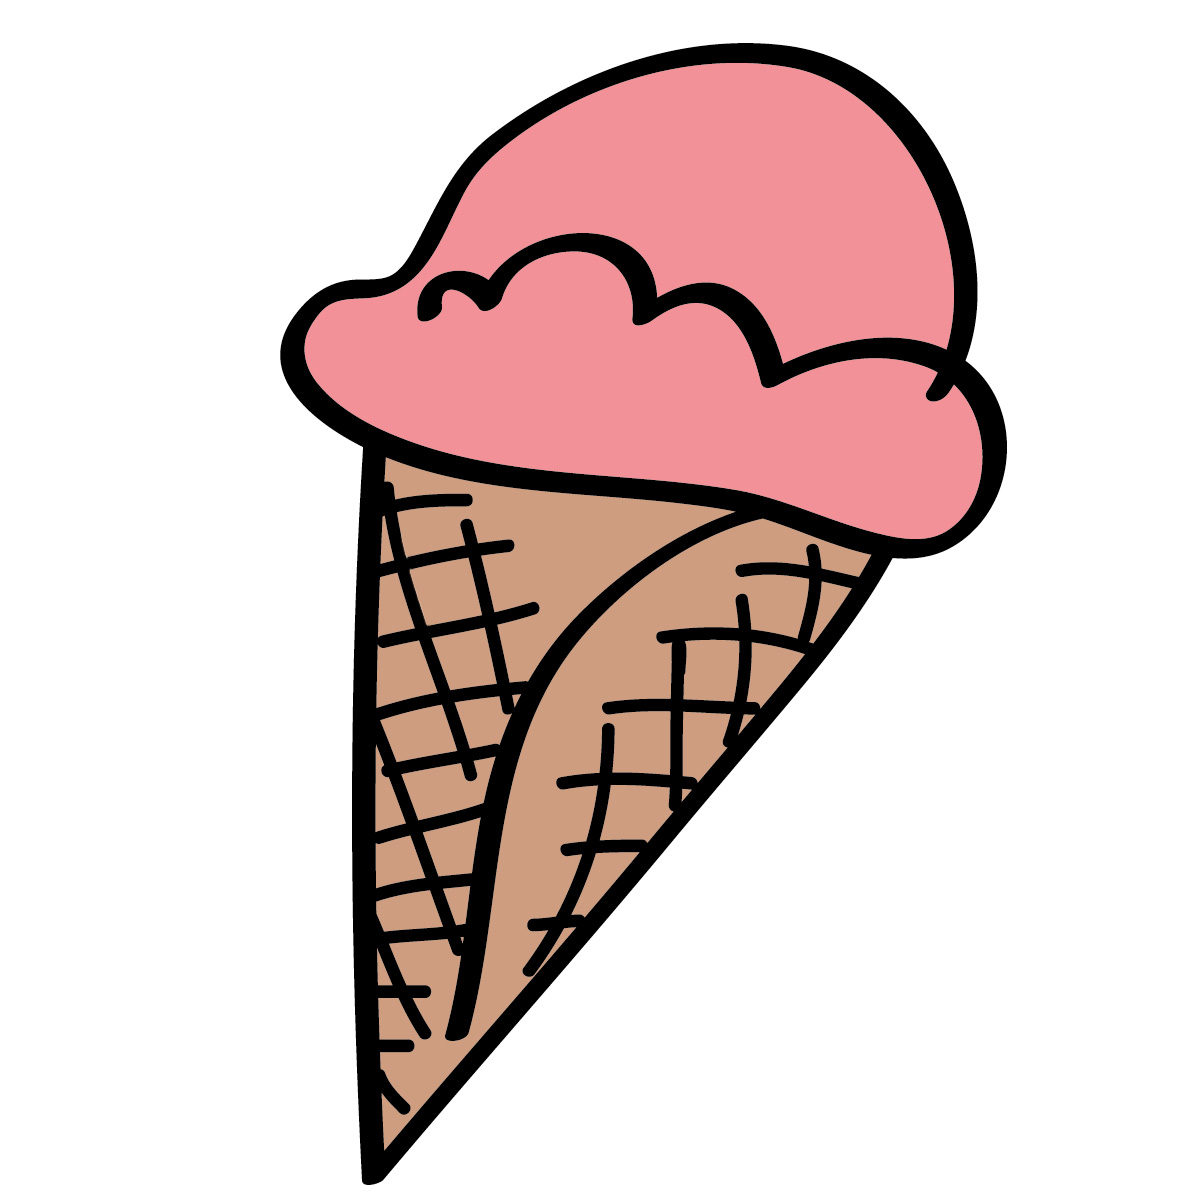 Ice cream cone clipart free images 3